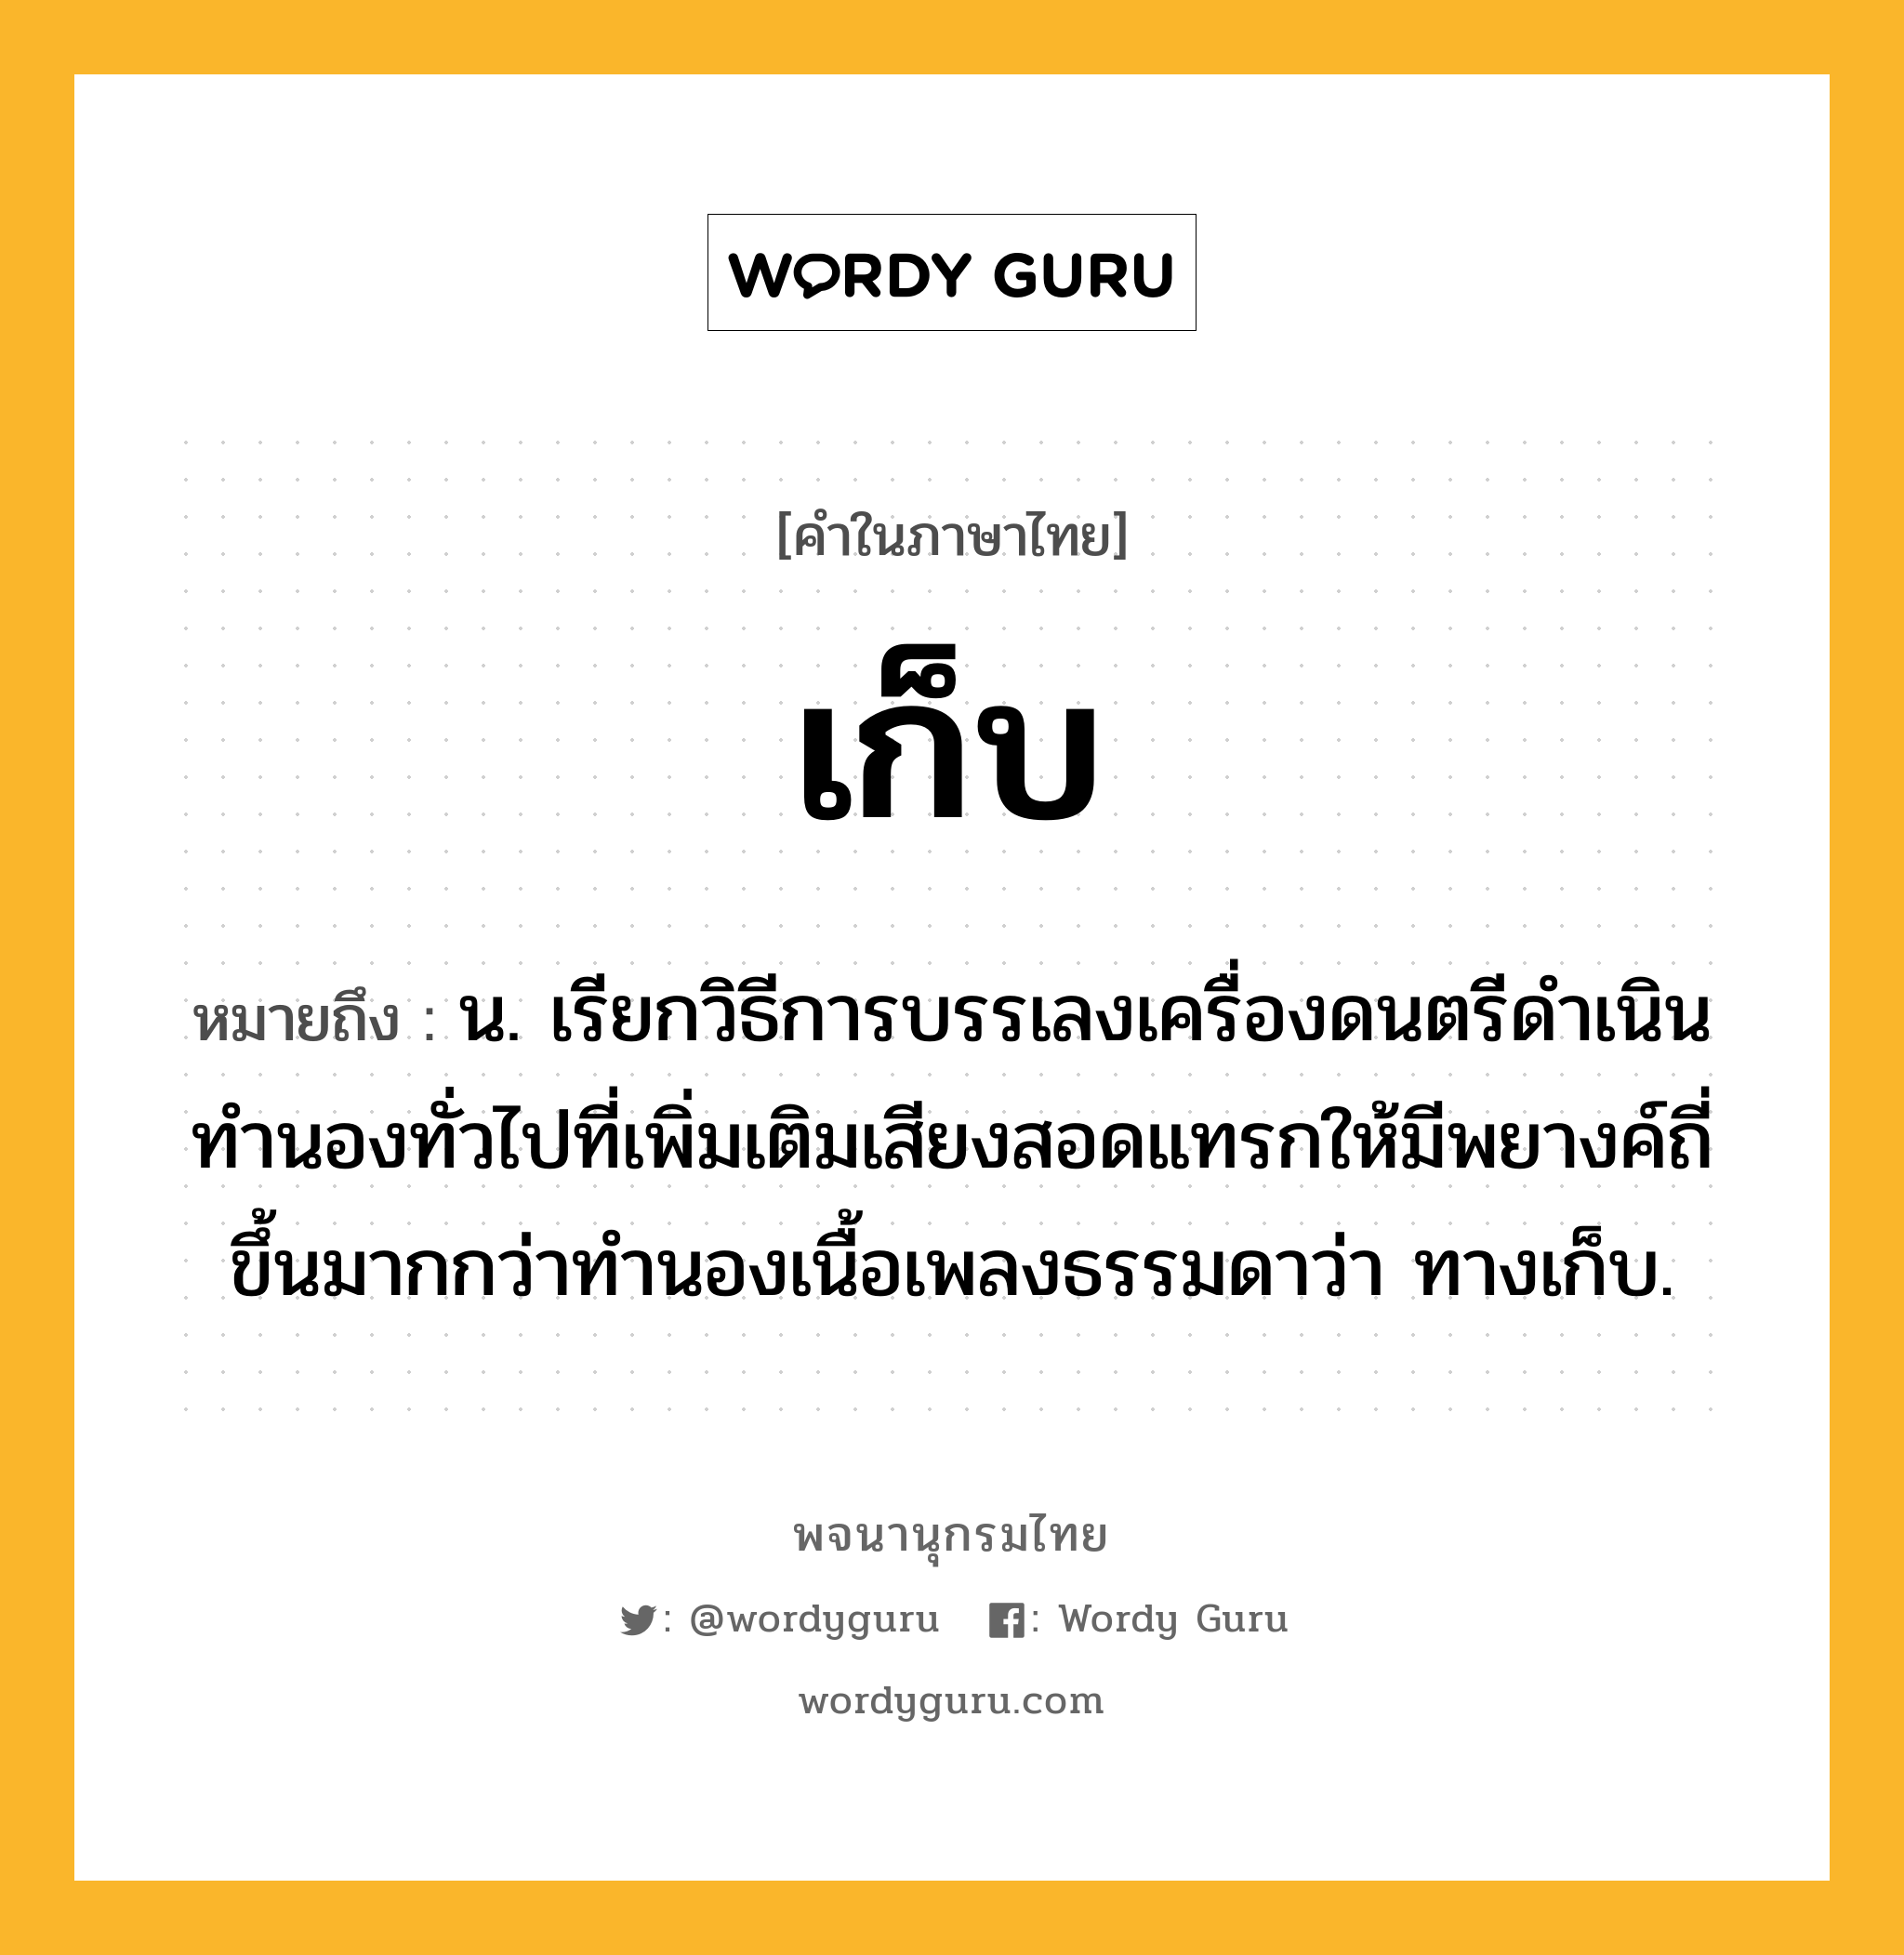 เก็บ หมายถึงอะไร?, คำในภาษาไทย เก็บ หมายถึง น. เรียกวิธีการบรรเลงเครื่องดนตรีดำเนินทำนองทั่วไปที่เพิ่มเติมเสียงสอดแทรกให้มีพยางค์ถี่ขึ้นมากกว่าทำนองเนื้อเพลงธรรมดาว่า ทางเก็บ.